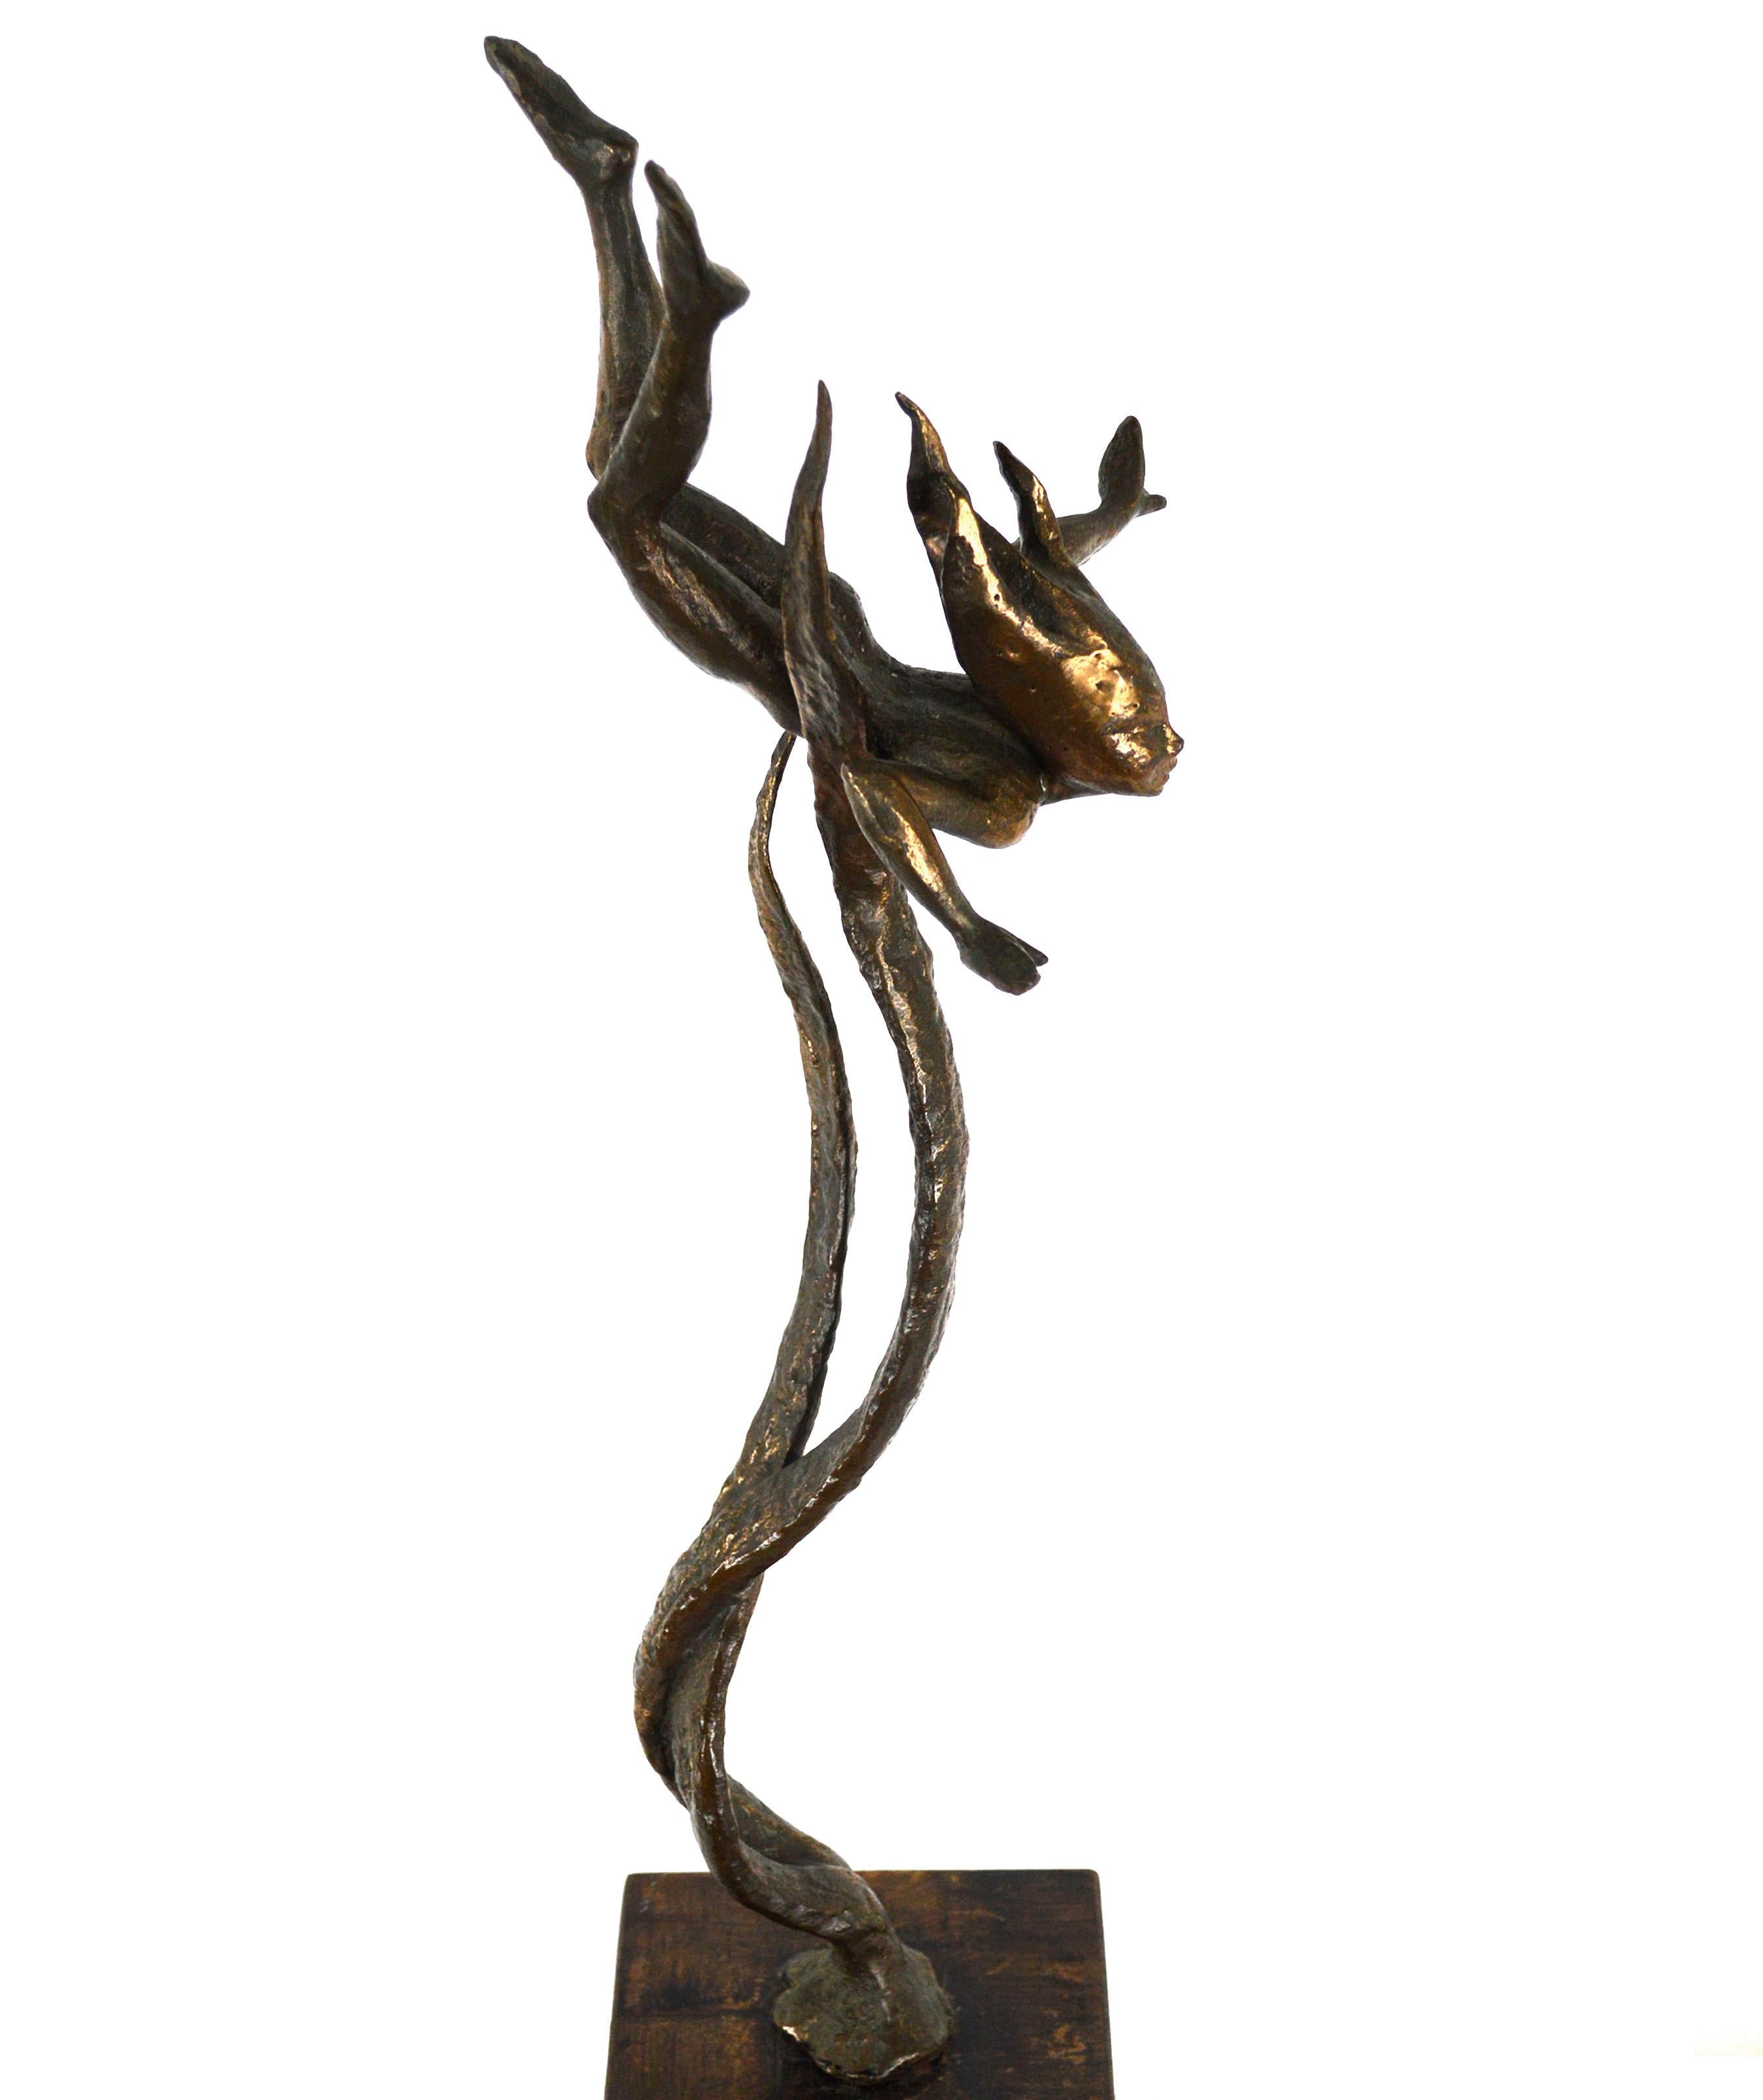 Sea Nymph, Mid Century Modern Brutalist Figurative Bronze Sculpture  - Brown Figurative Sculpture by Unknown